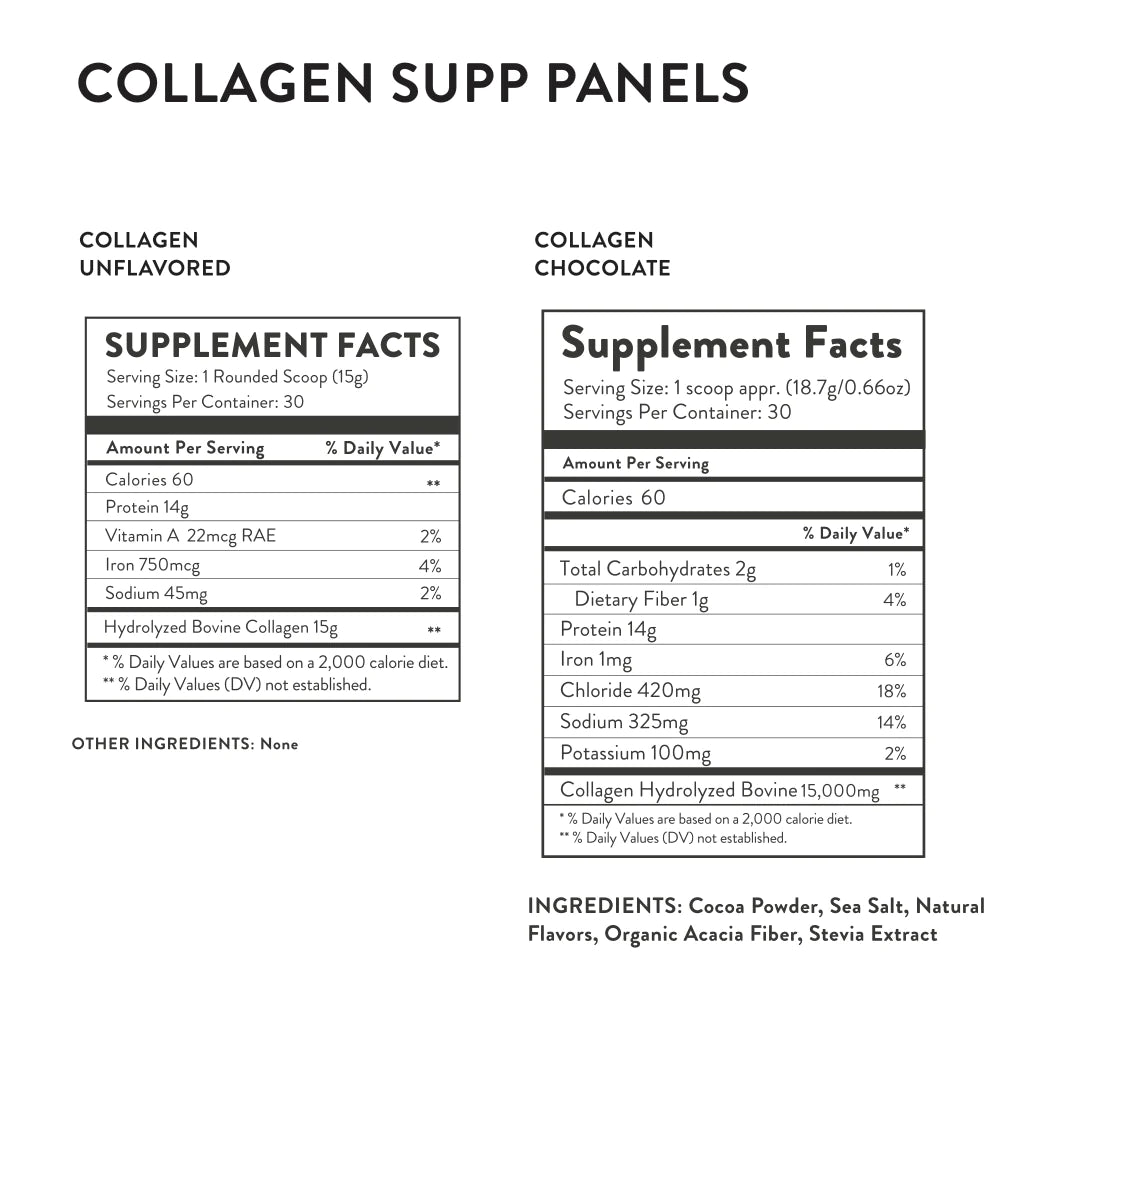 Equip: Grass-fed Collagen (Unflavoured)